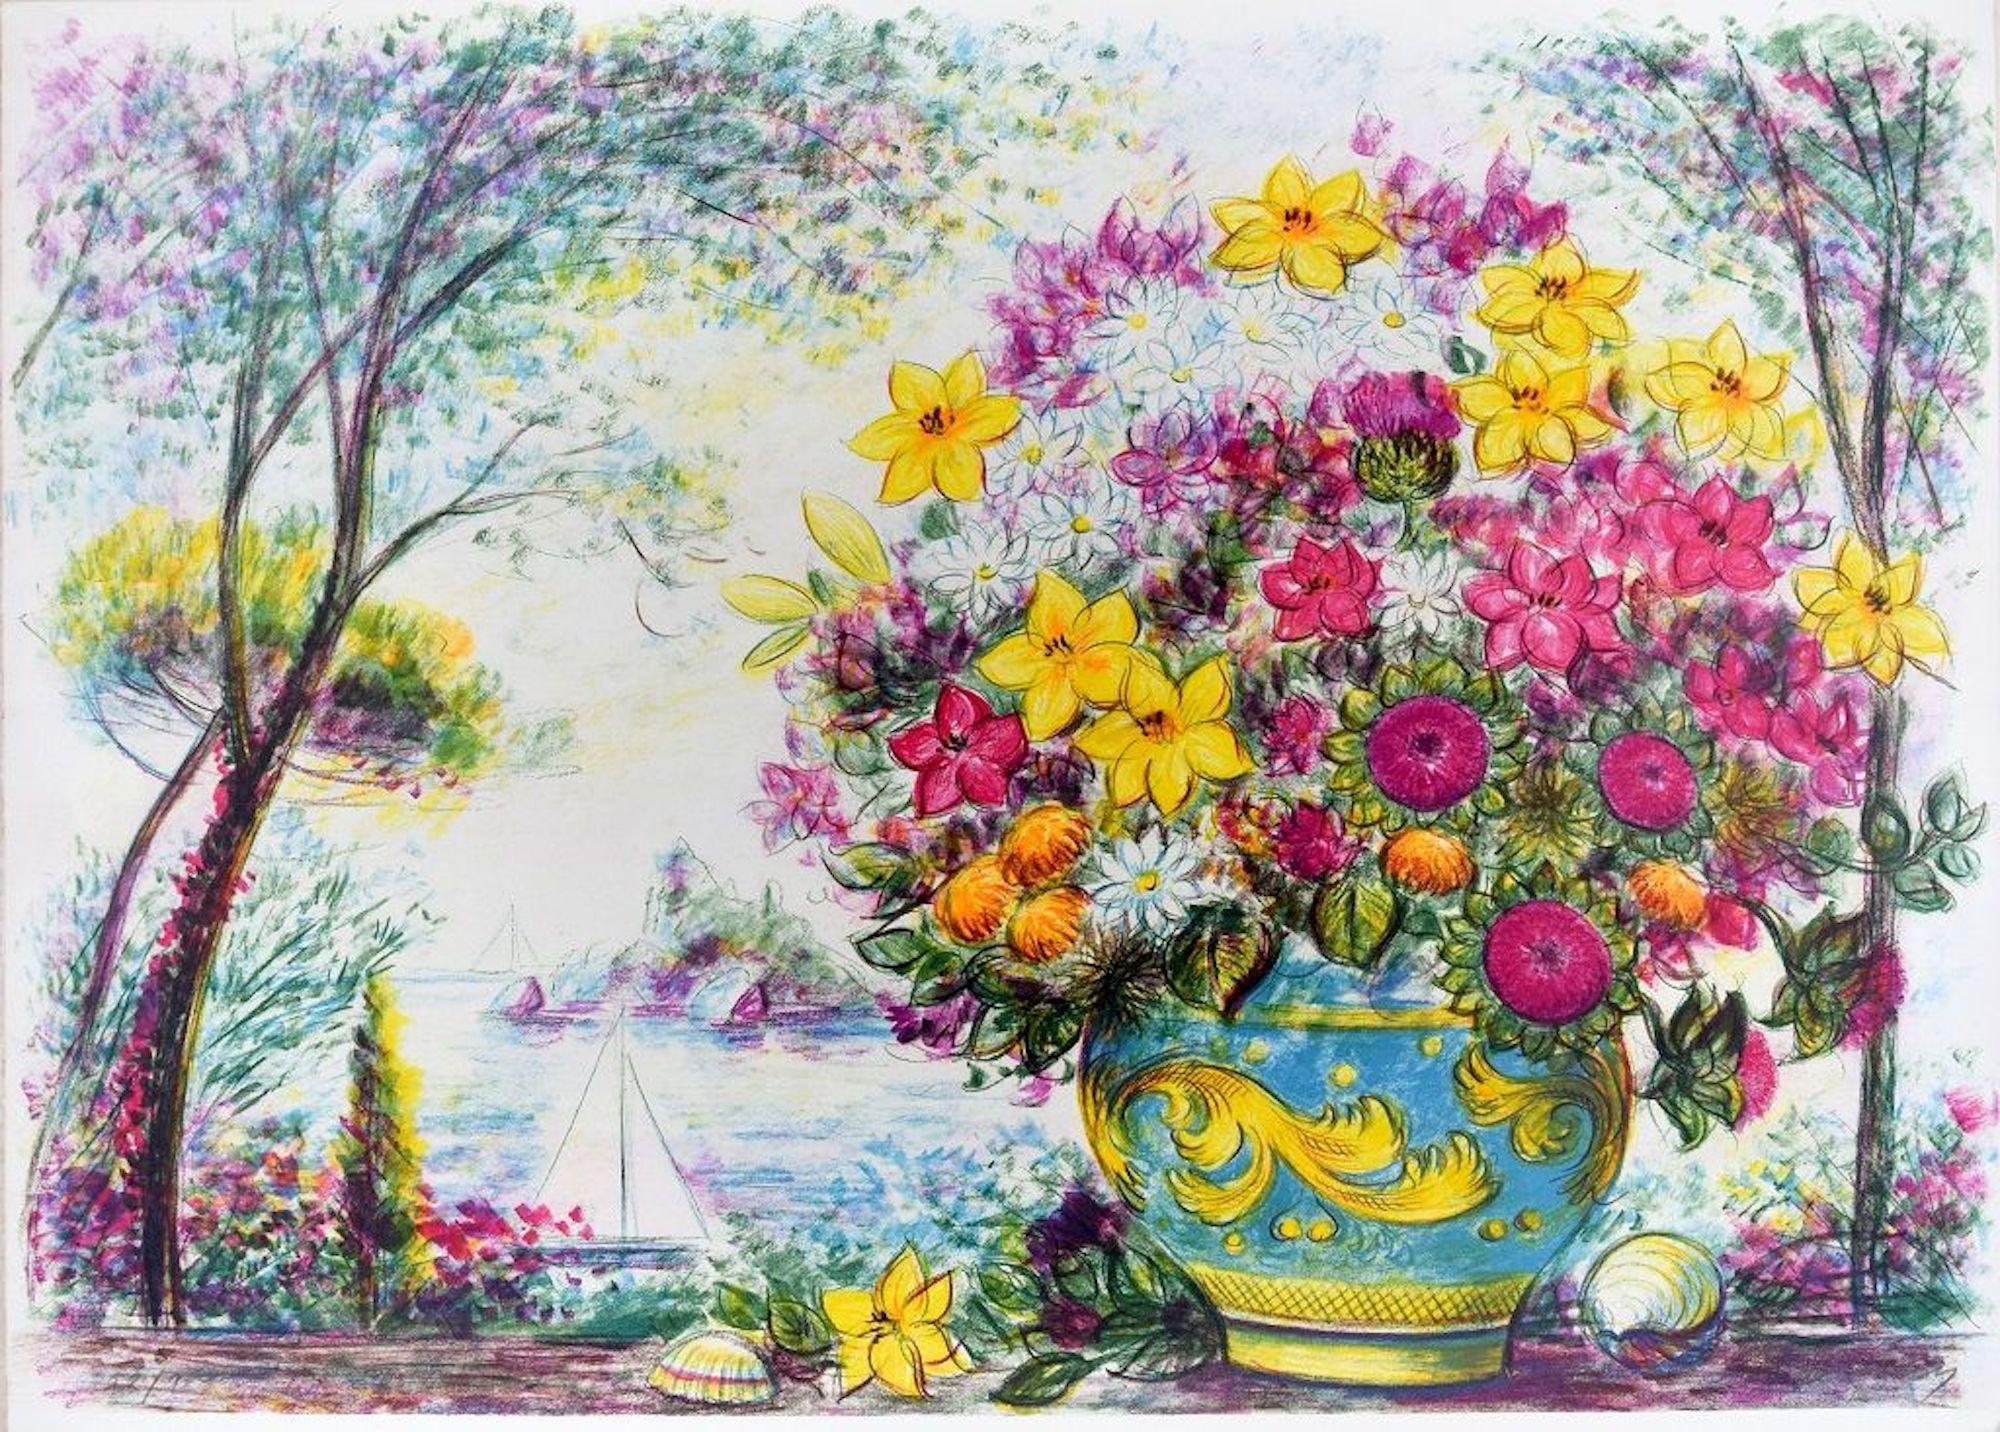 Flowerpot  - Lithograph by Jovan Vulic - 1988